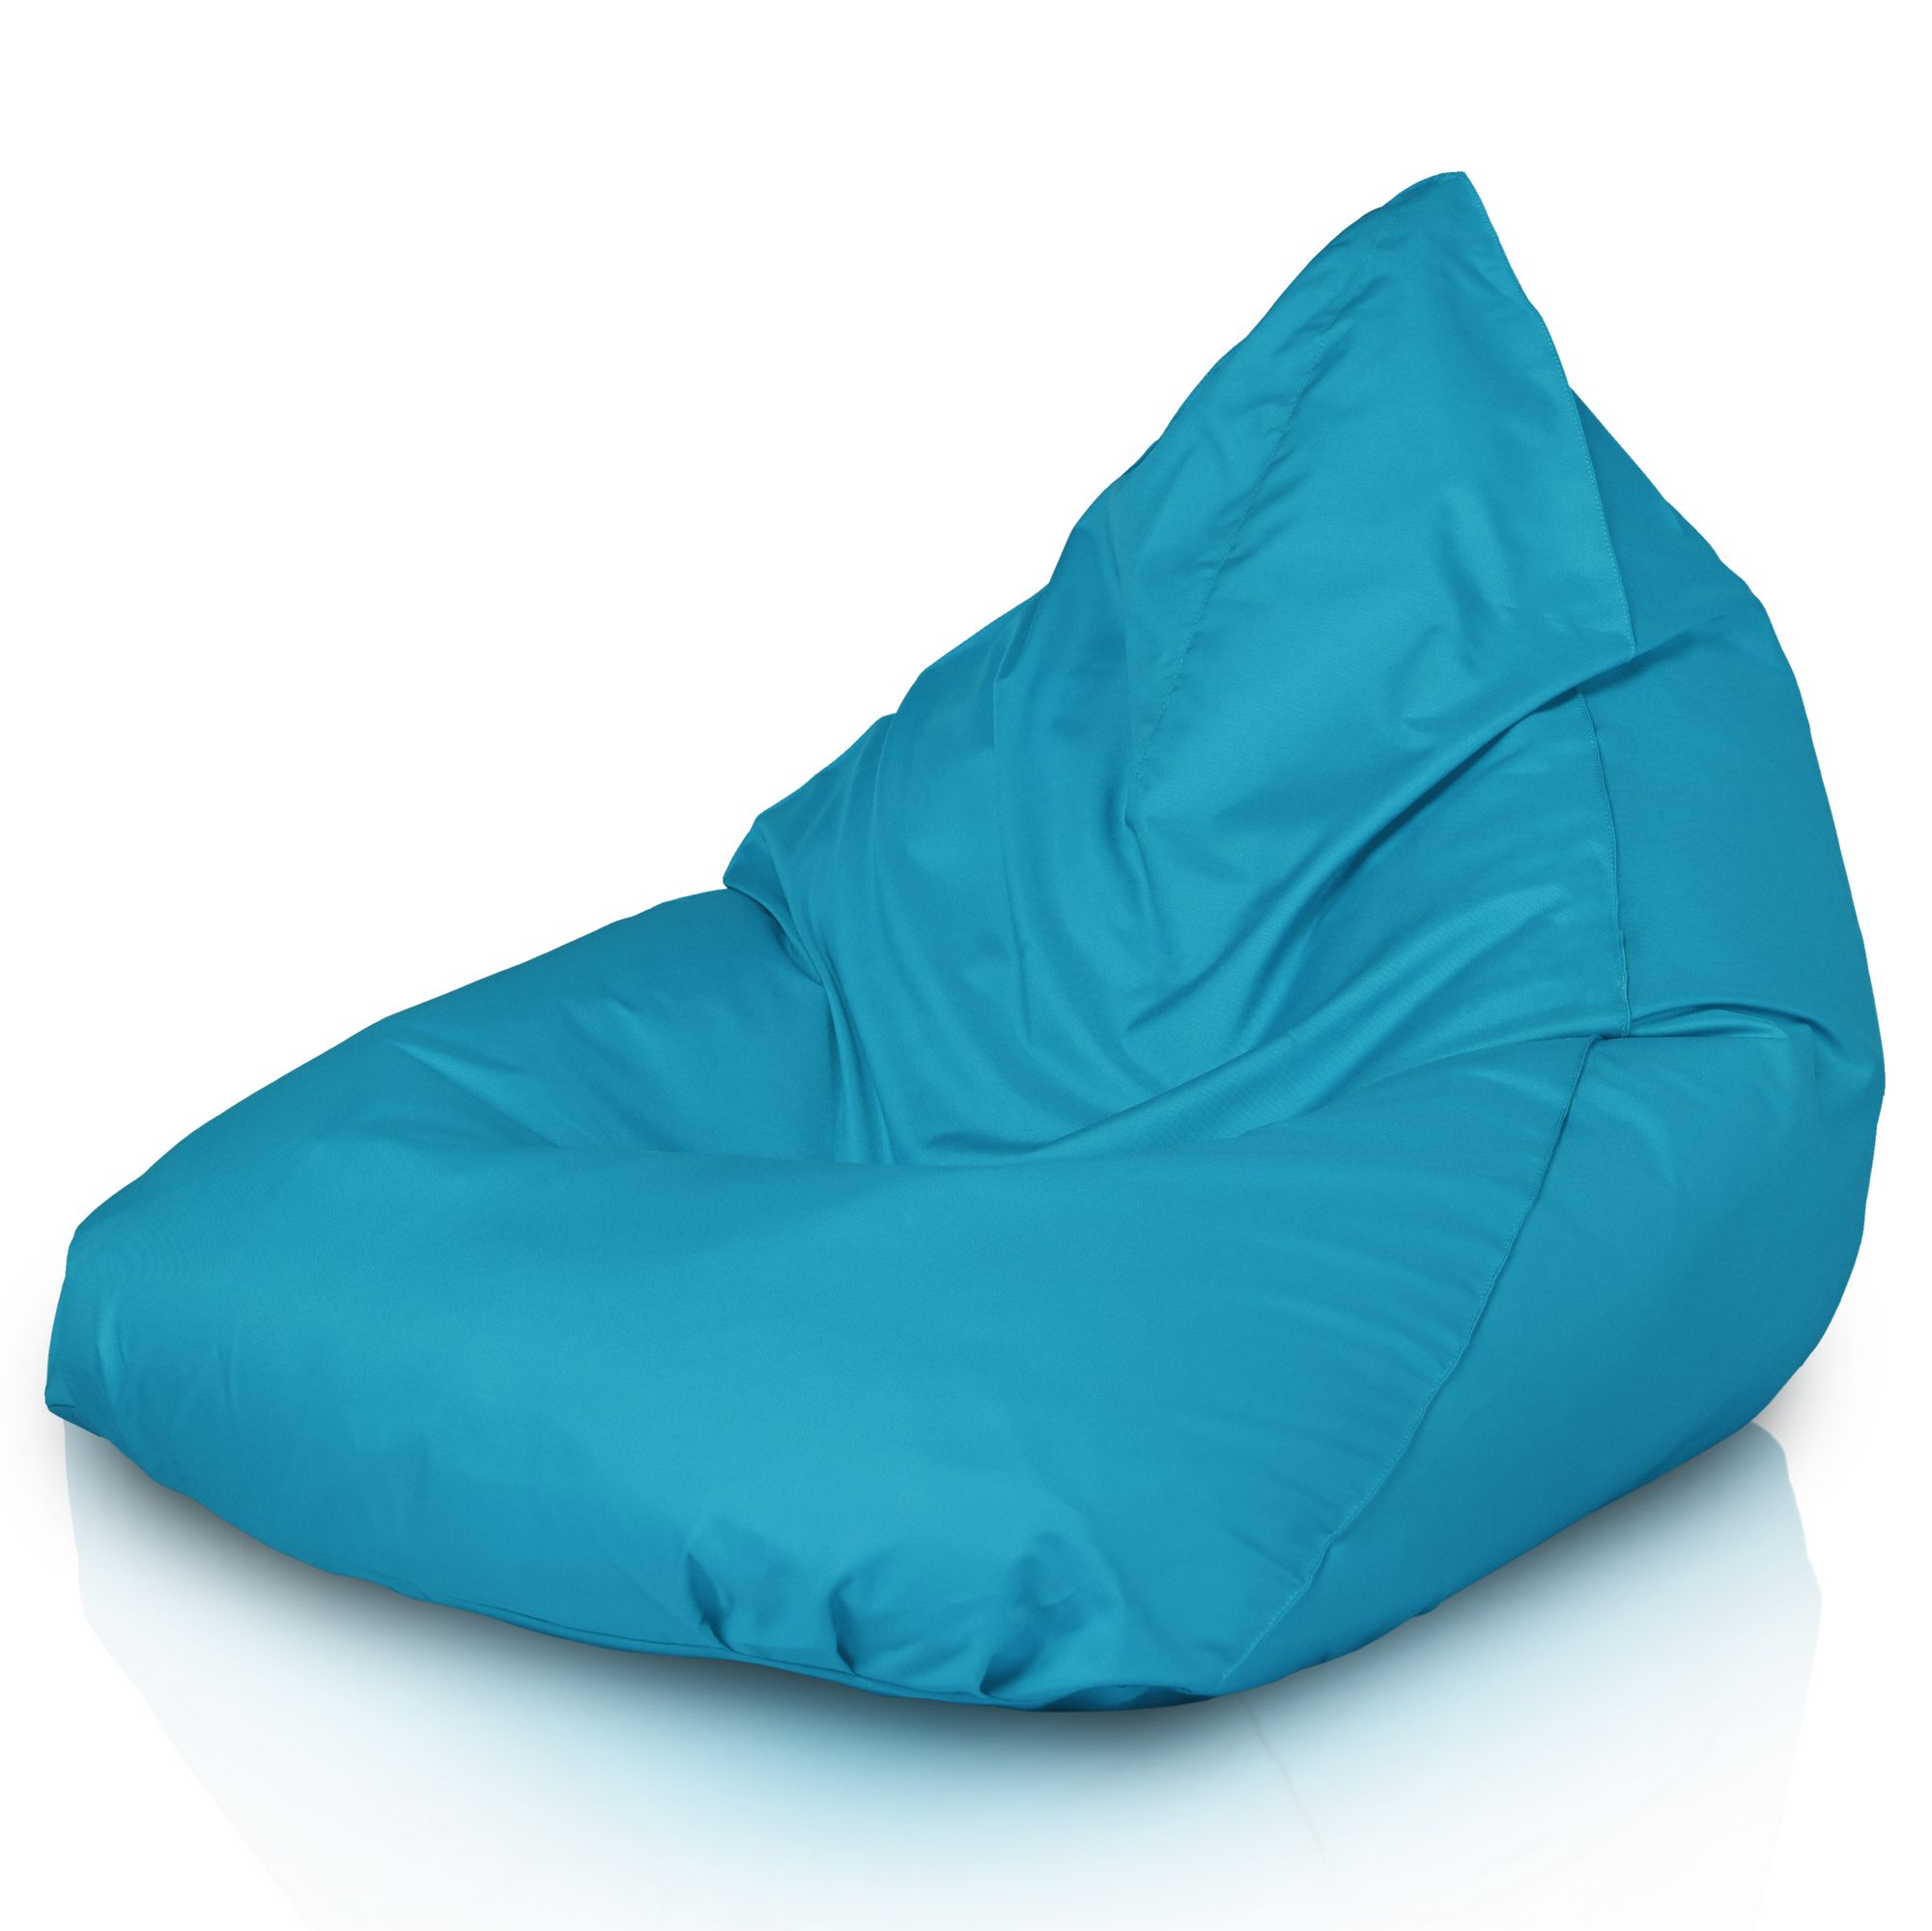 Pouf seduta sacco esterno in nylon azzurro. Poltrona pouf da giardino